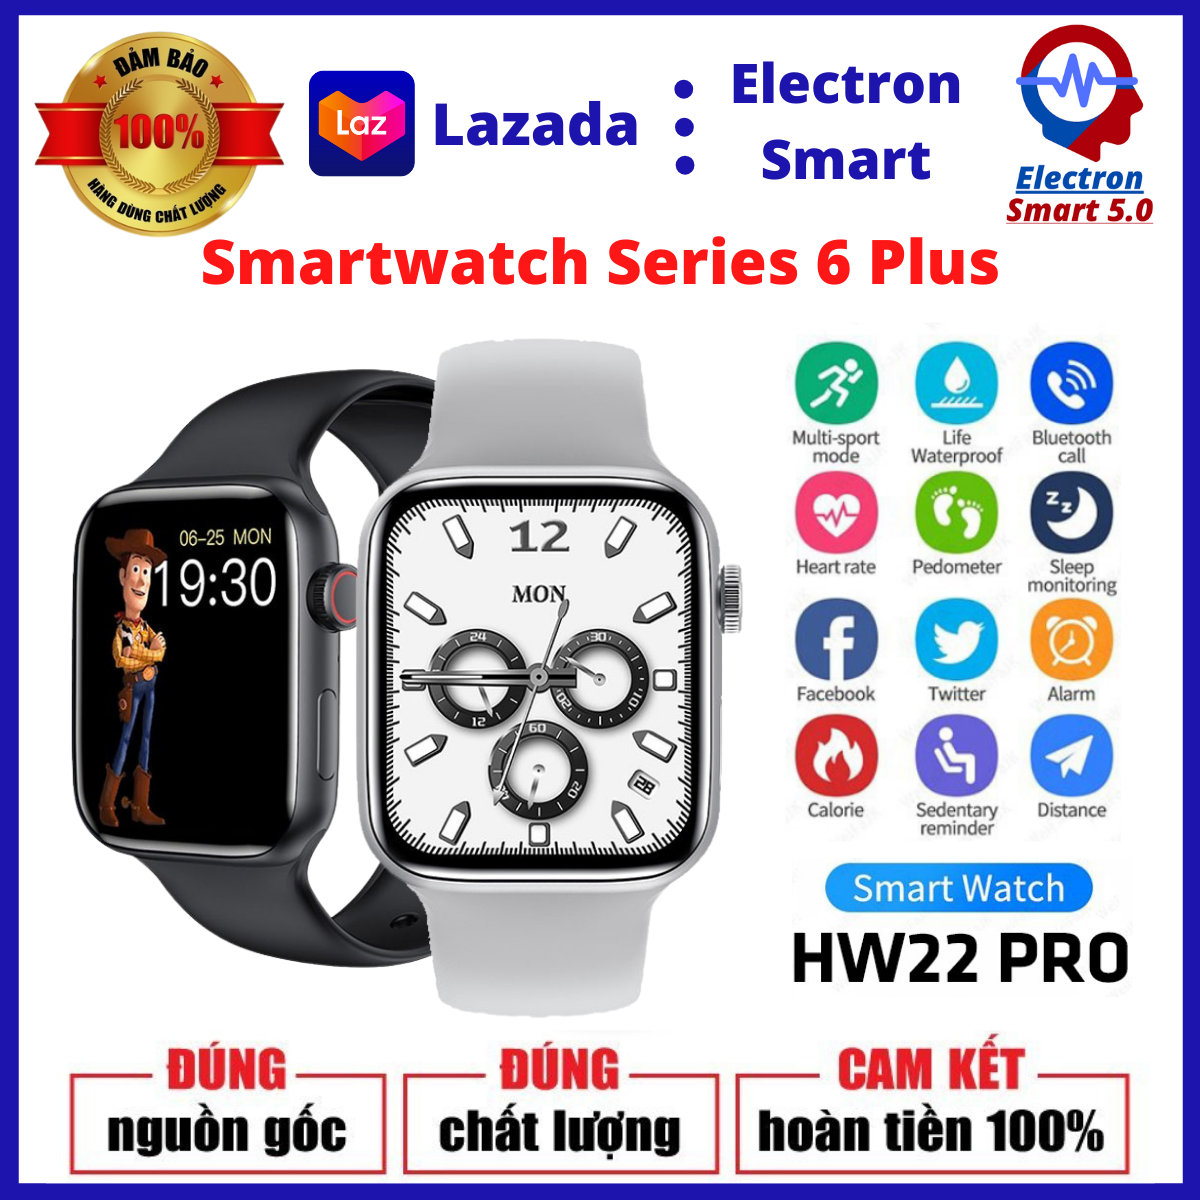 Đồng Hồ Thông Minh HW22 PRO - Smart Watch Series 6 Phiên Bản Cao Cấp - Màn Hình 1.75 Inch Tràn Viền - Nghe Gọi Trực Tiếp - Chống Nước Chuẩn IP68 - Theo Dõi Giấc Ngủ, Đo Nhịp Tim, Chơi Game - Sử Dụng Nút Xoay Digital Crown - BH 1 Năm.